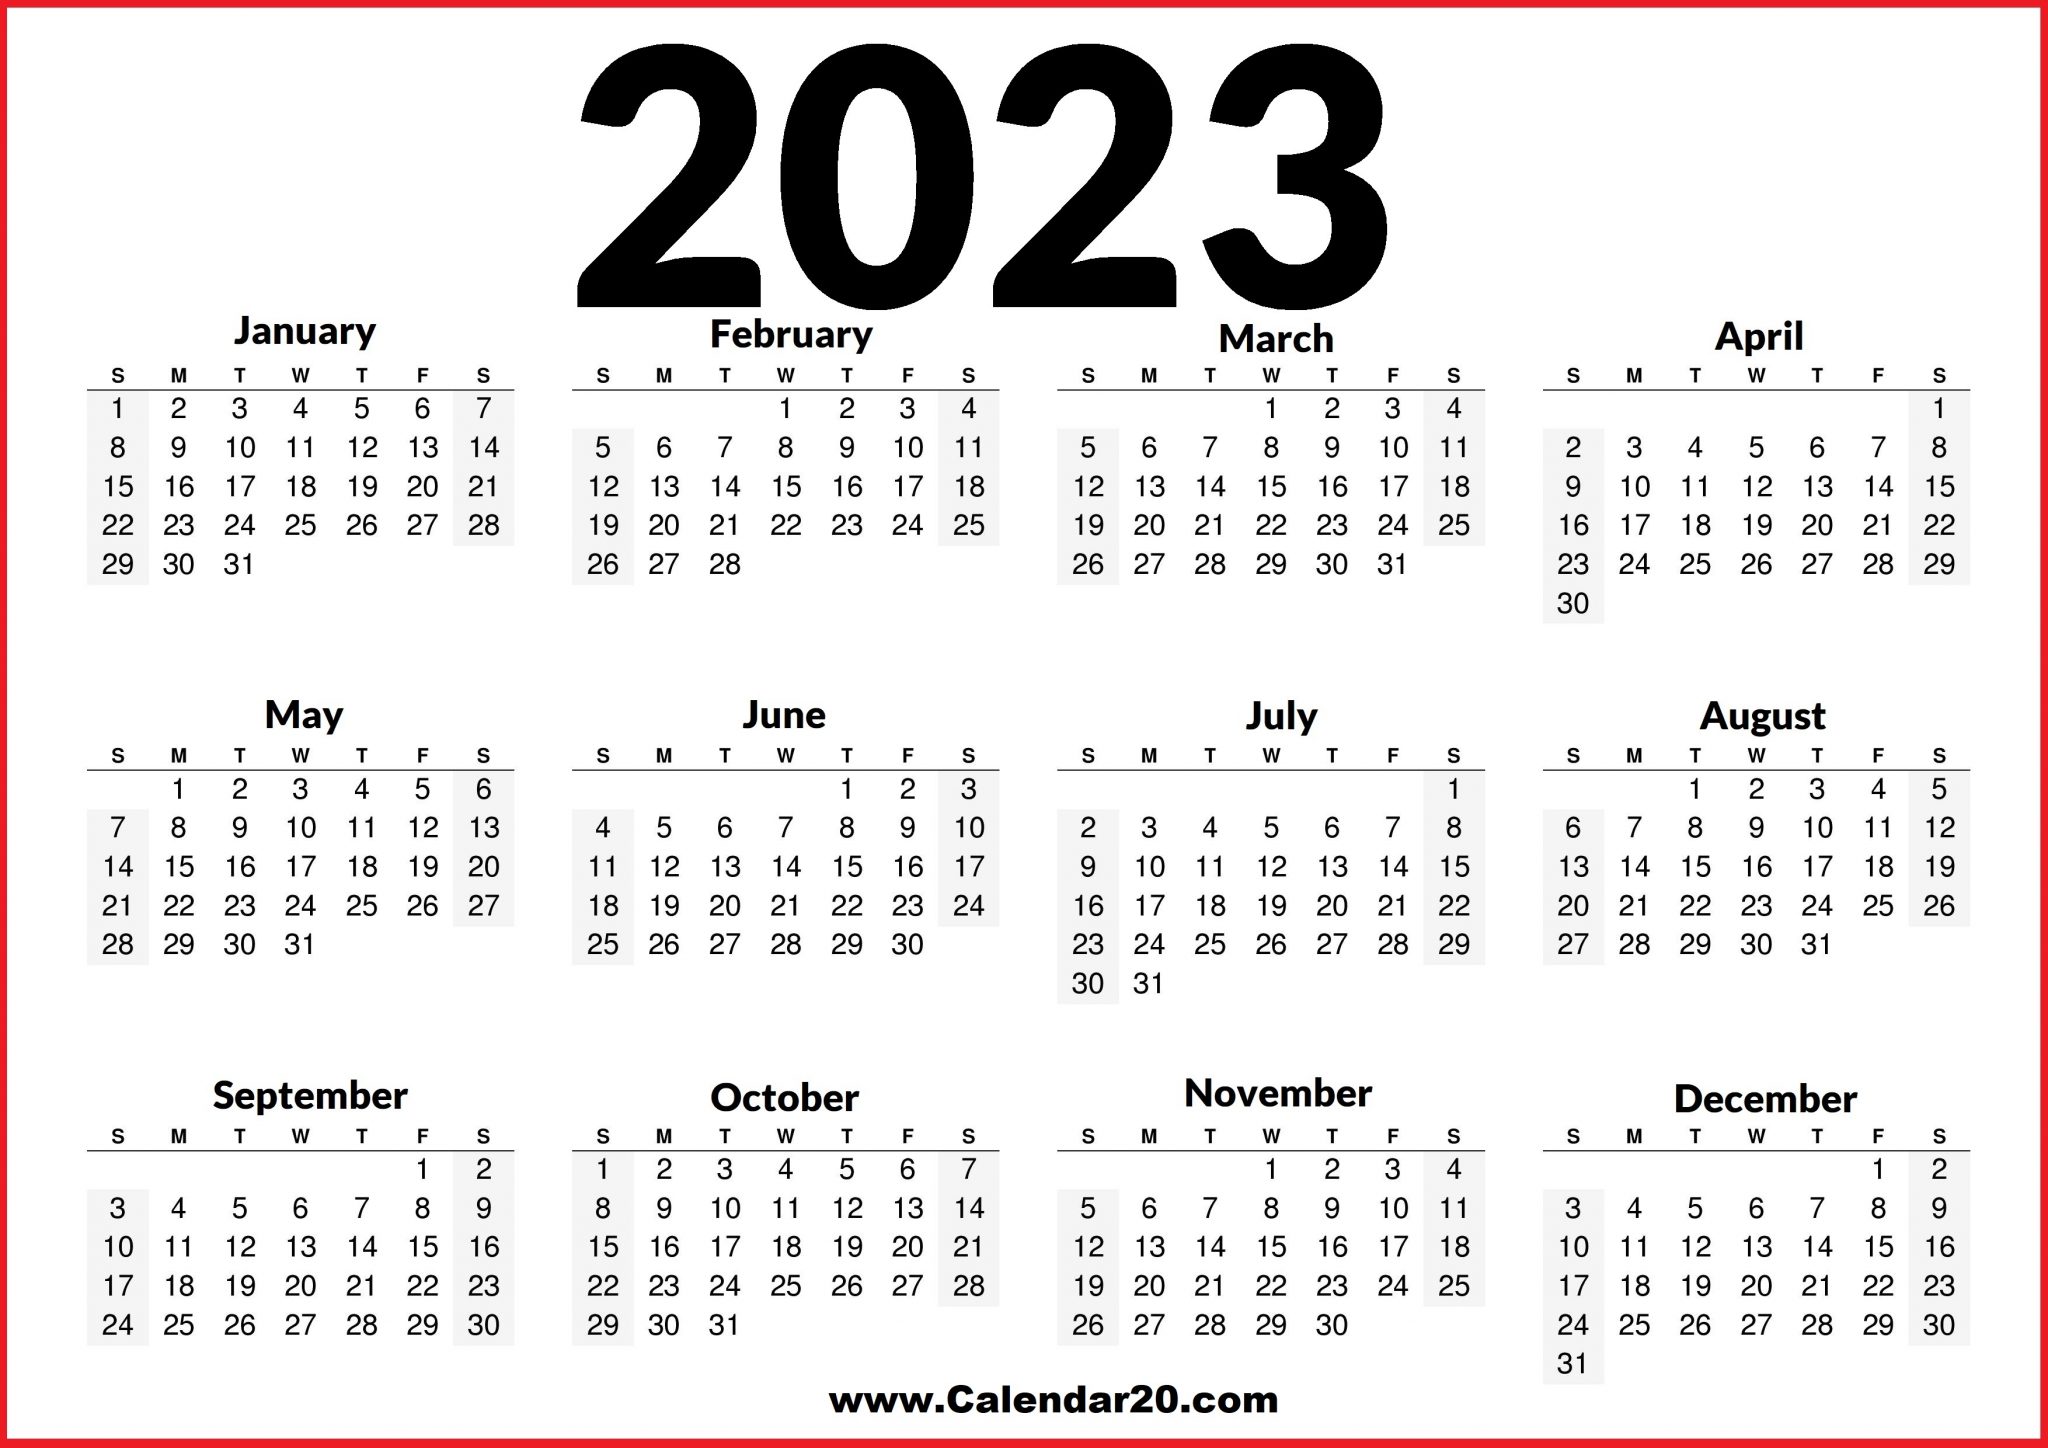 2023 Printable US Calendar – Free Download - Calendar20.com